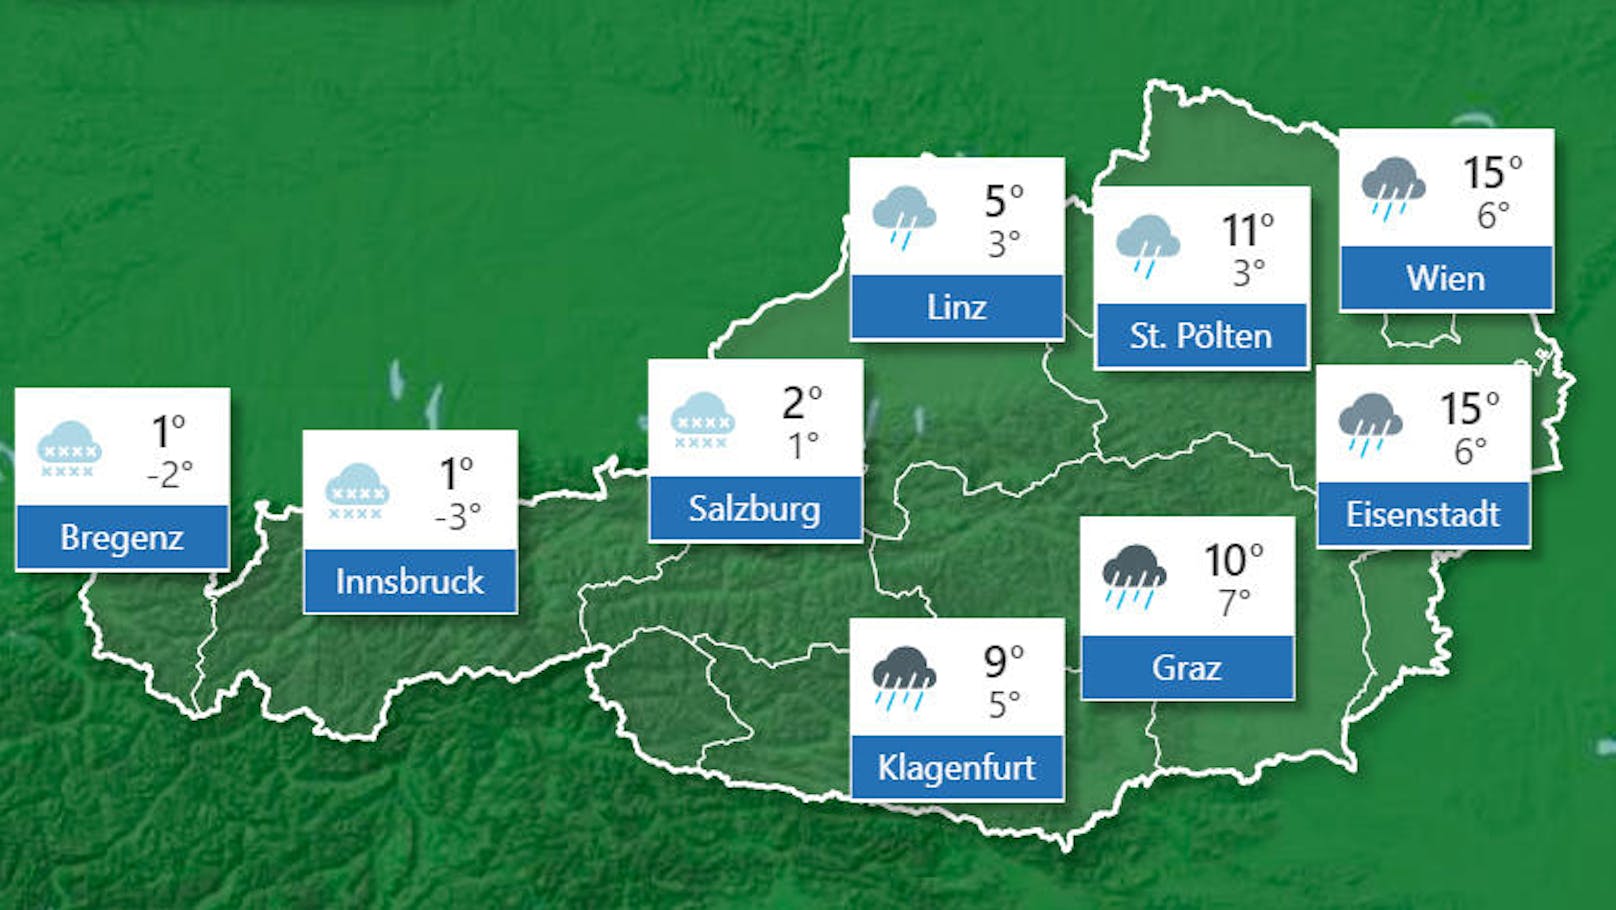 <b>Sonntag, 17. November 2019</b>
Der Sonntag beginnt von Vorarlberg bis Oberkärnten mit teils kräftigem Regen, die Schneefallgrenze liegt von West nach Ost zwischen 700 und 1400 Meter. Tagsüber verlagern sich Regen und Schneefall unter Abschwächung ostwärts in Richtung Steiermark. Ganz im Osten scheint zunächst die Sonne, am Nachmittag beginnt es aber auch hier zu regnen. Vom Inn- bis ins Waldviertel bleibt es meist trocken mit kurzen Auflockerungen. Die Schneefallgrenze liegt von West nach Ost zwischen 700 und 1700 Meter. Die Temperaturen steigen auf 1 Grad im Westen und auf bis zu 17 Grad im Osten.